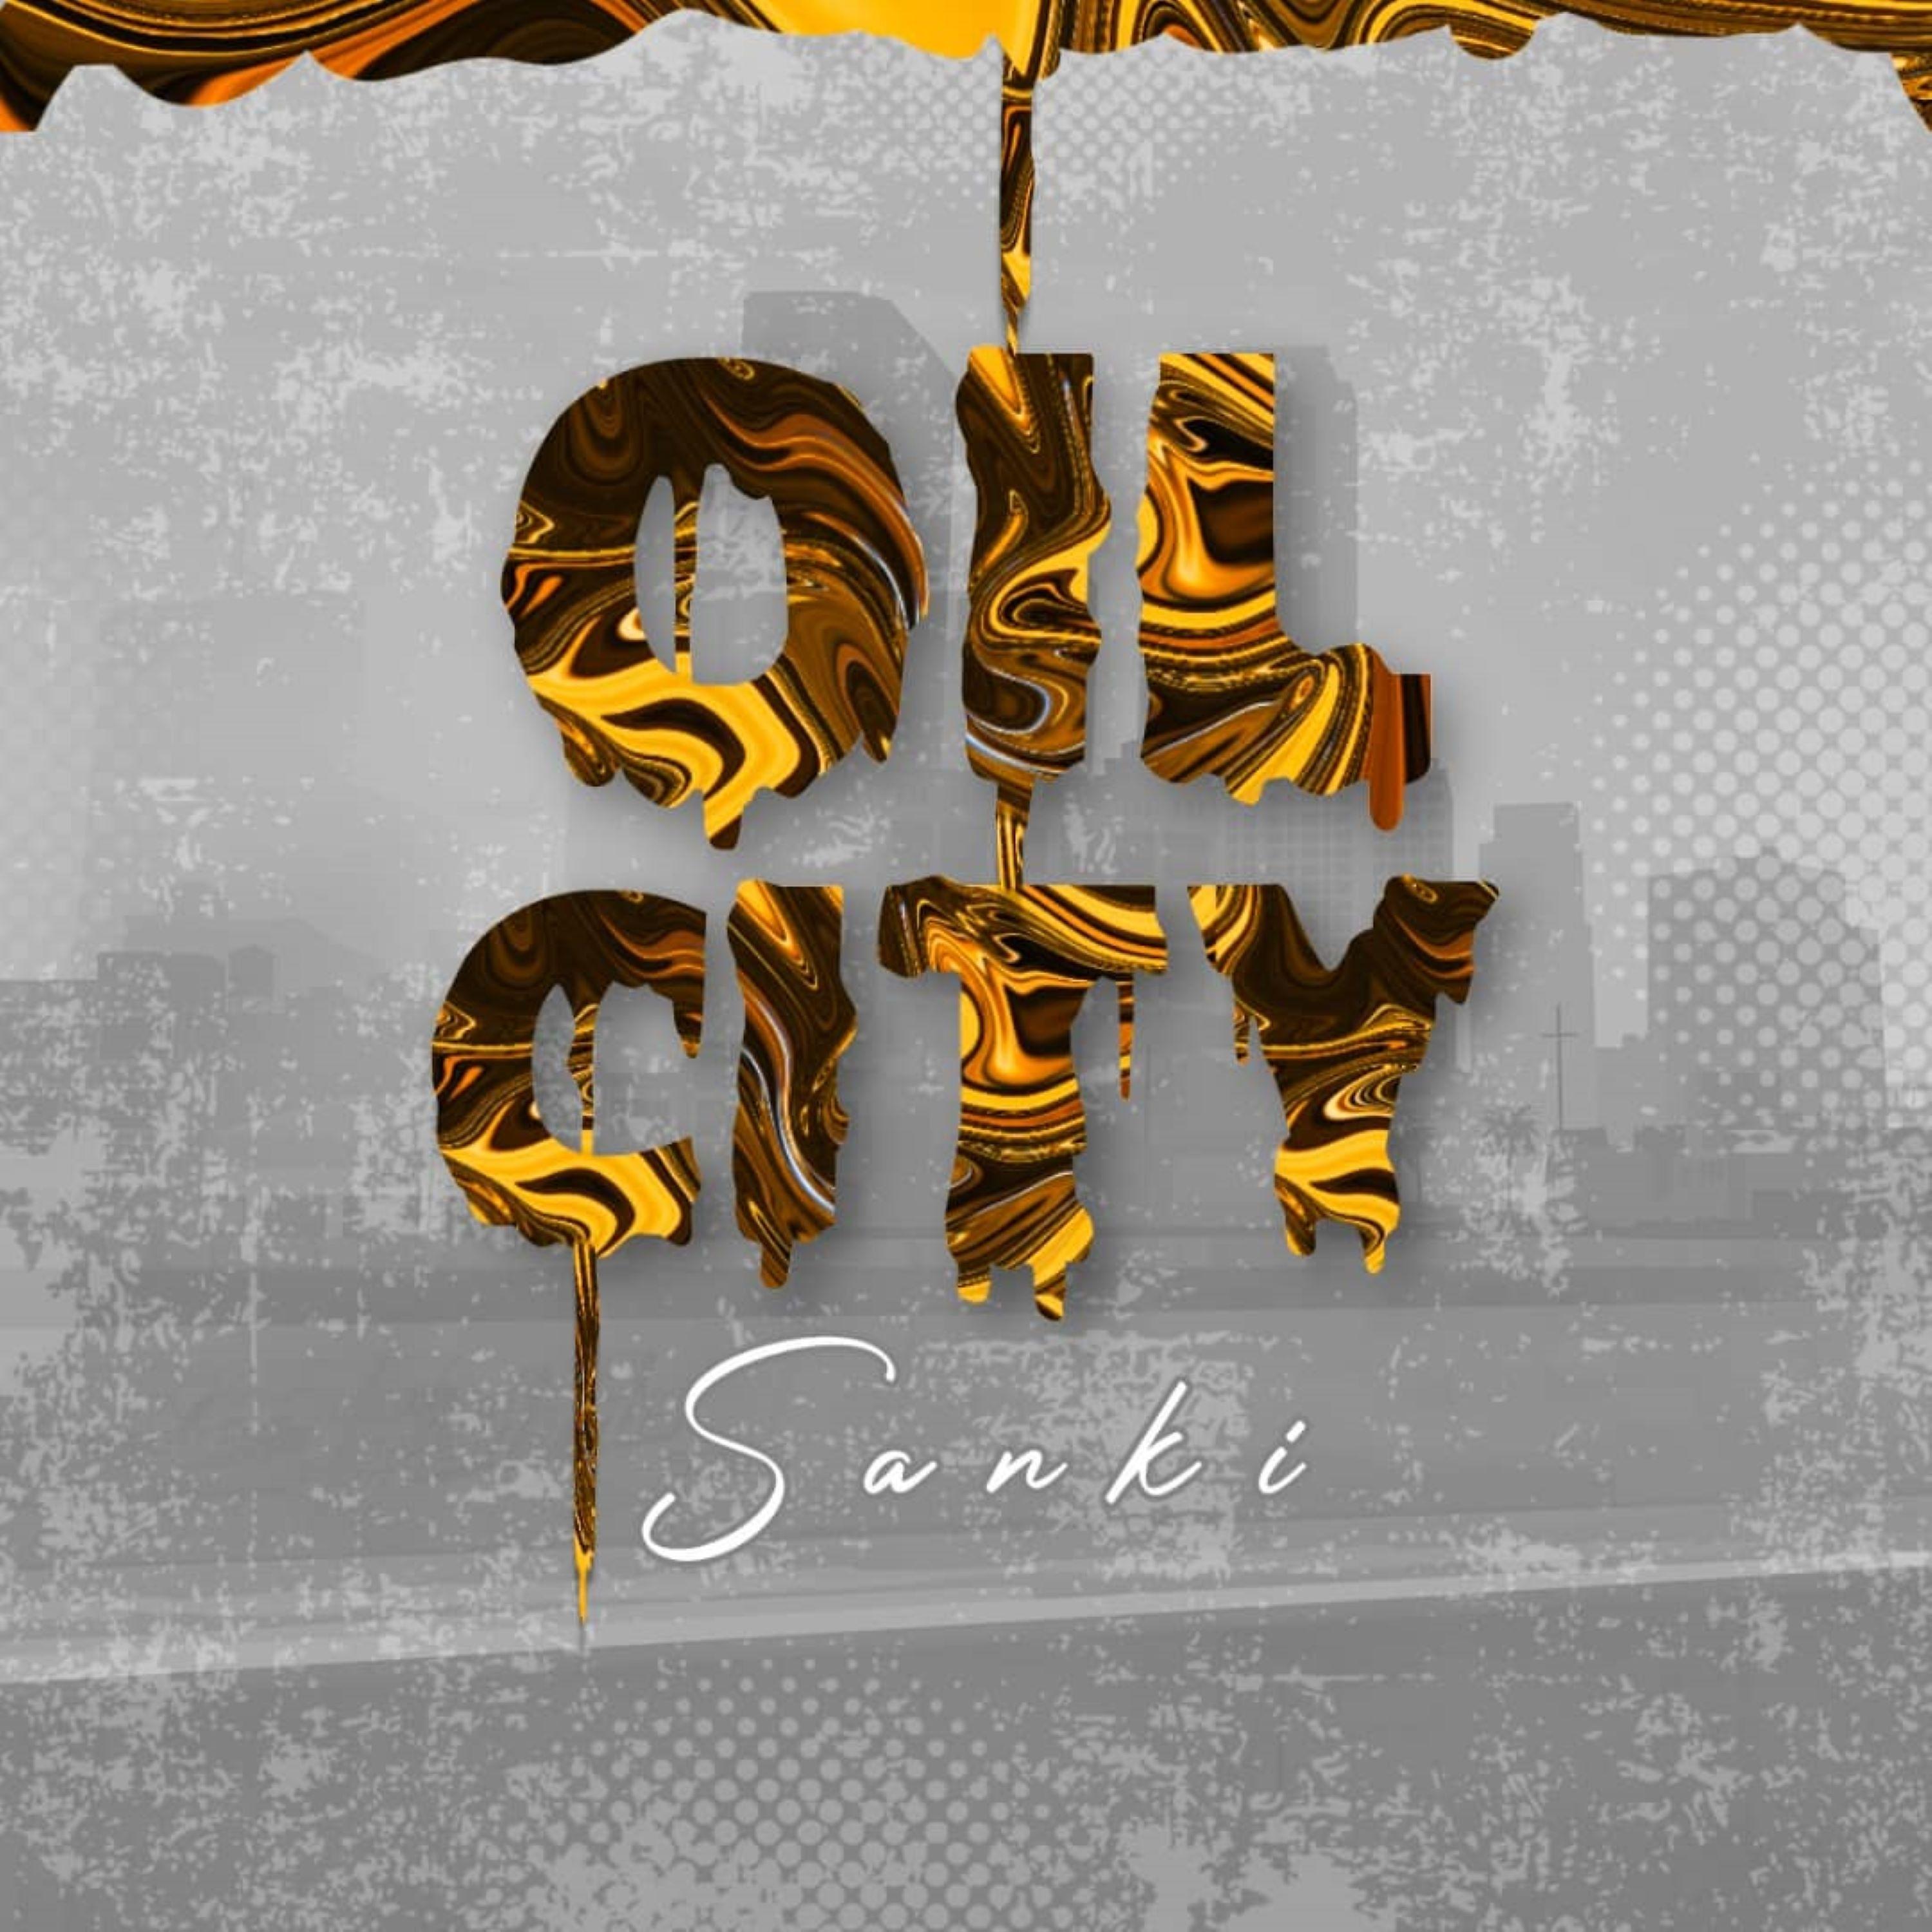 Постер альбома Oil City